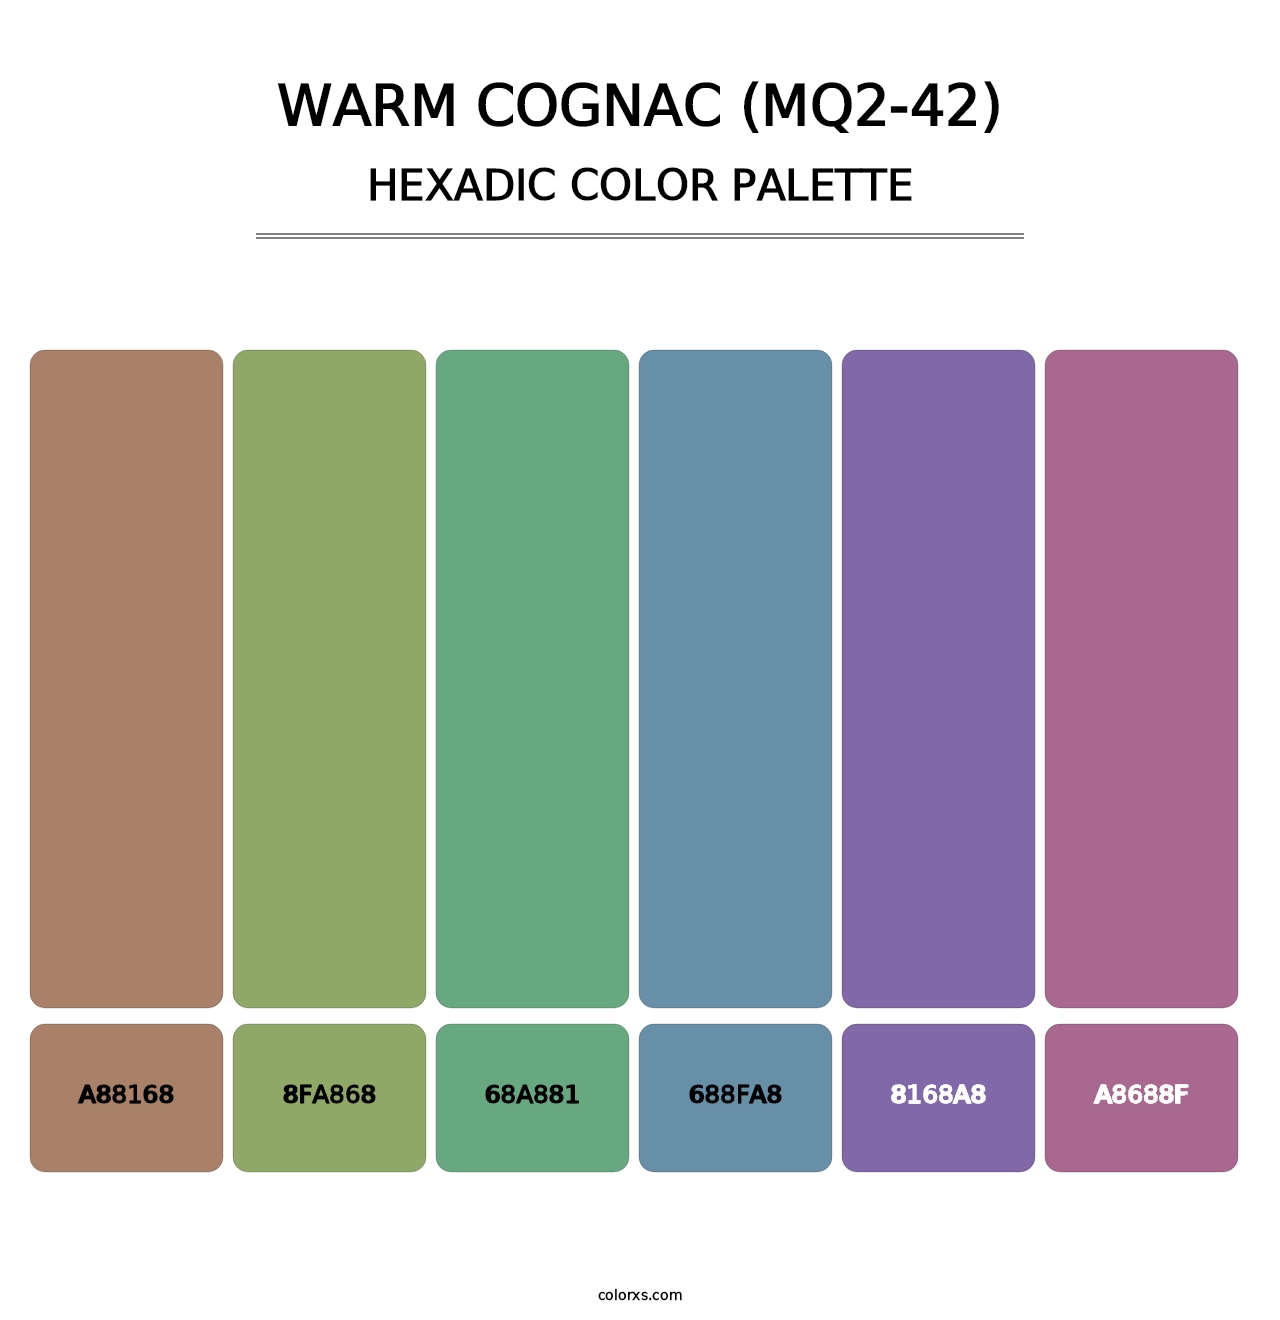 Warm Cognac (MQ2-42) - Hexadic Color Palette